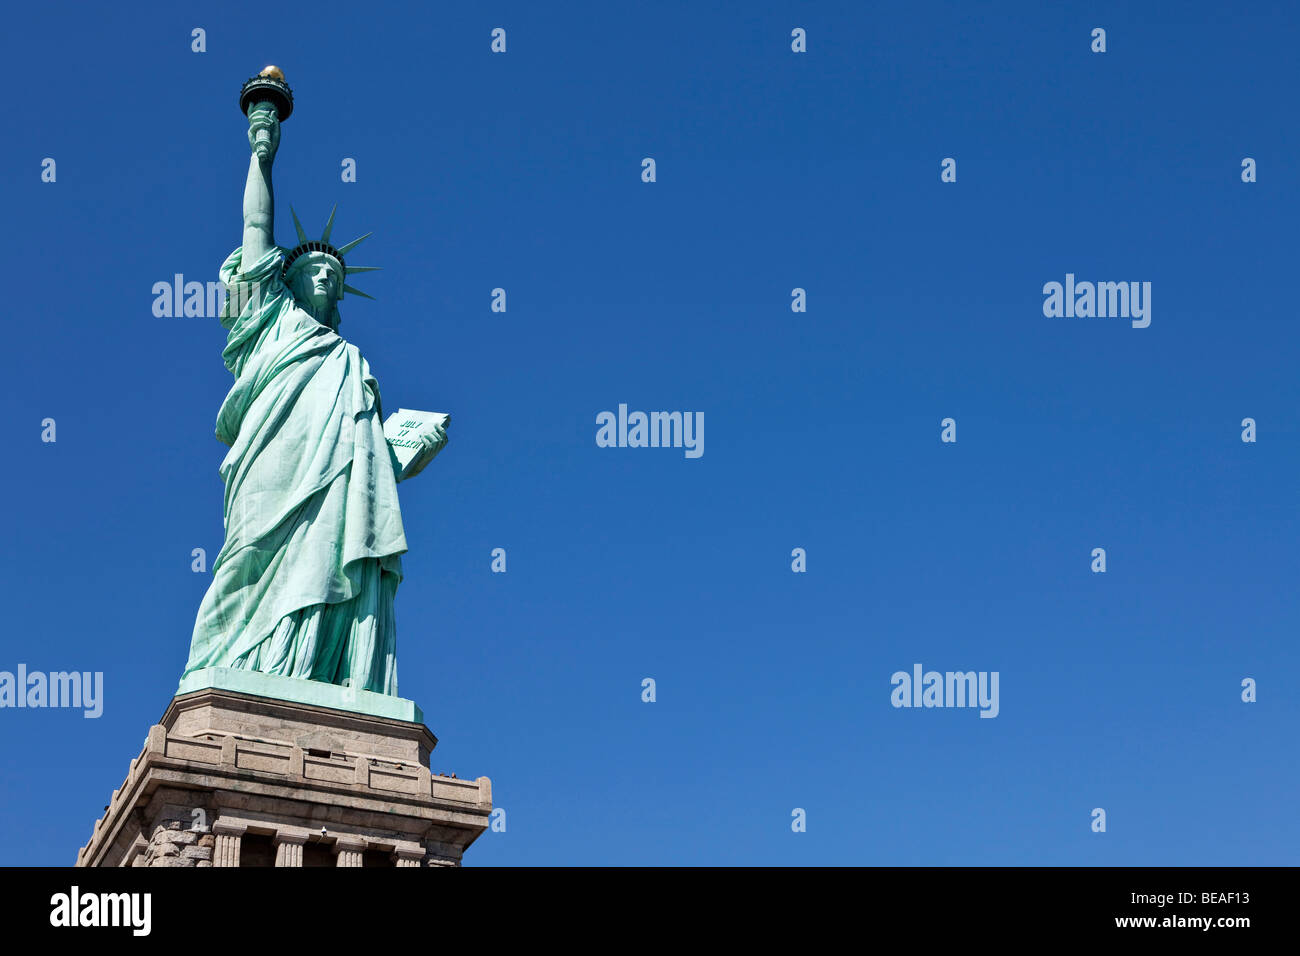 Statue de la liberté, Liberty Island, New York, NY, USA Banque D'Images